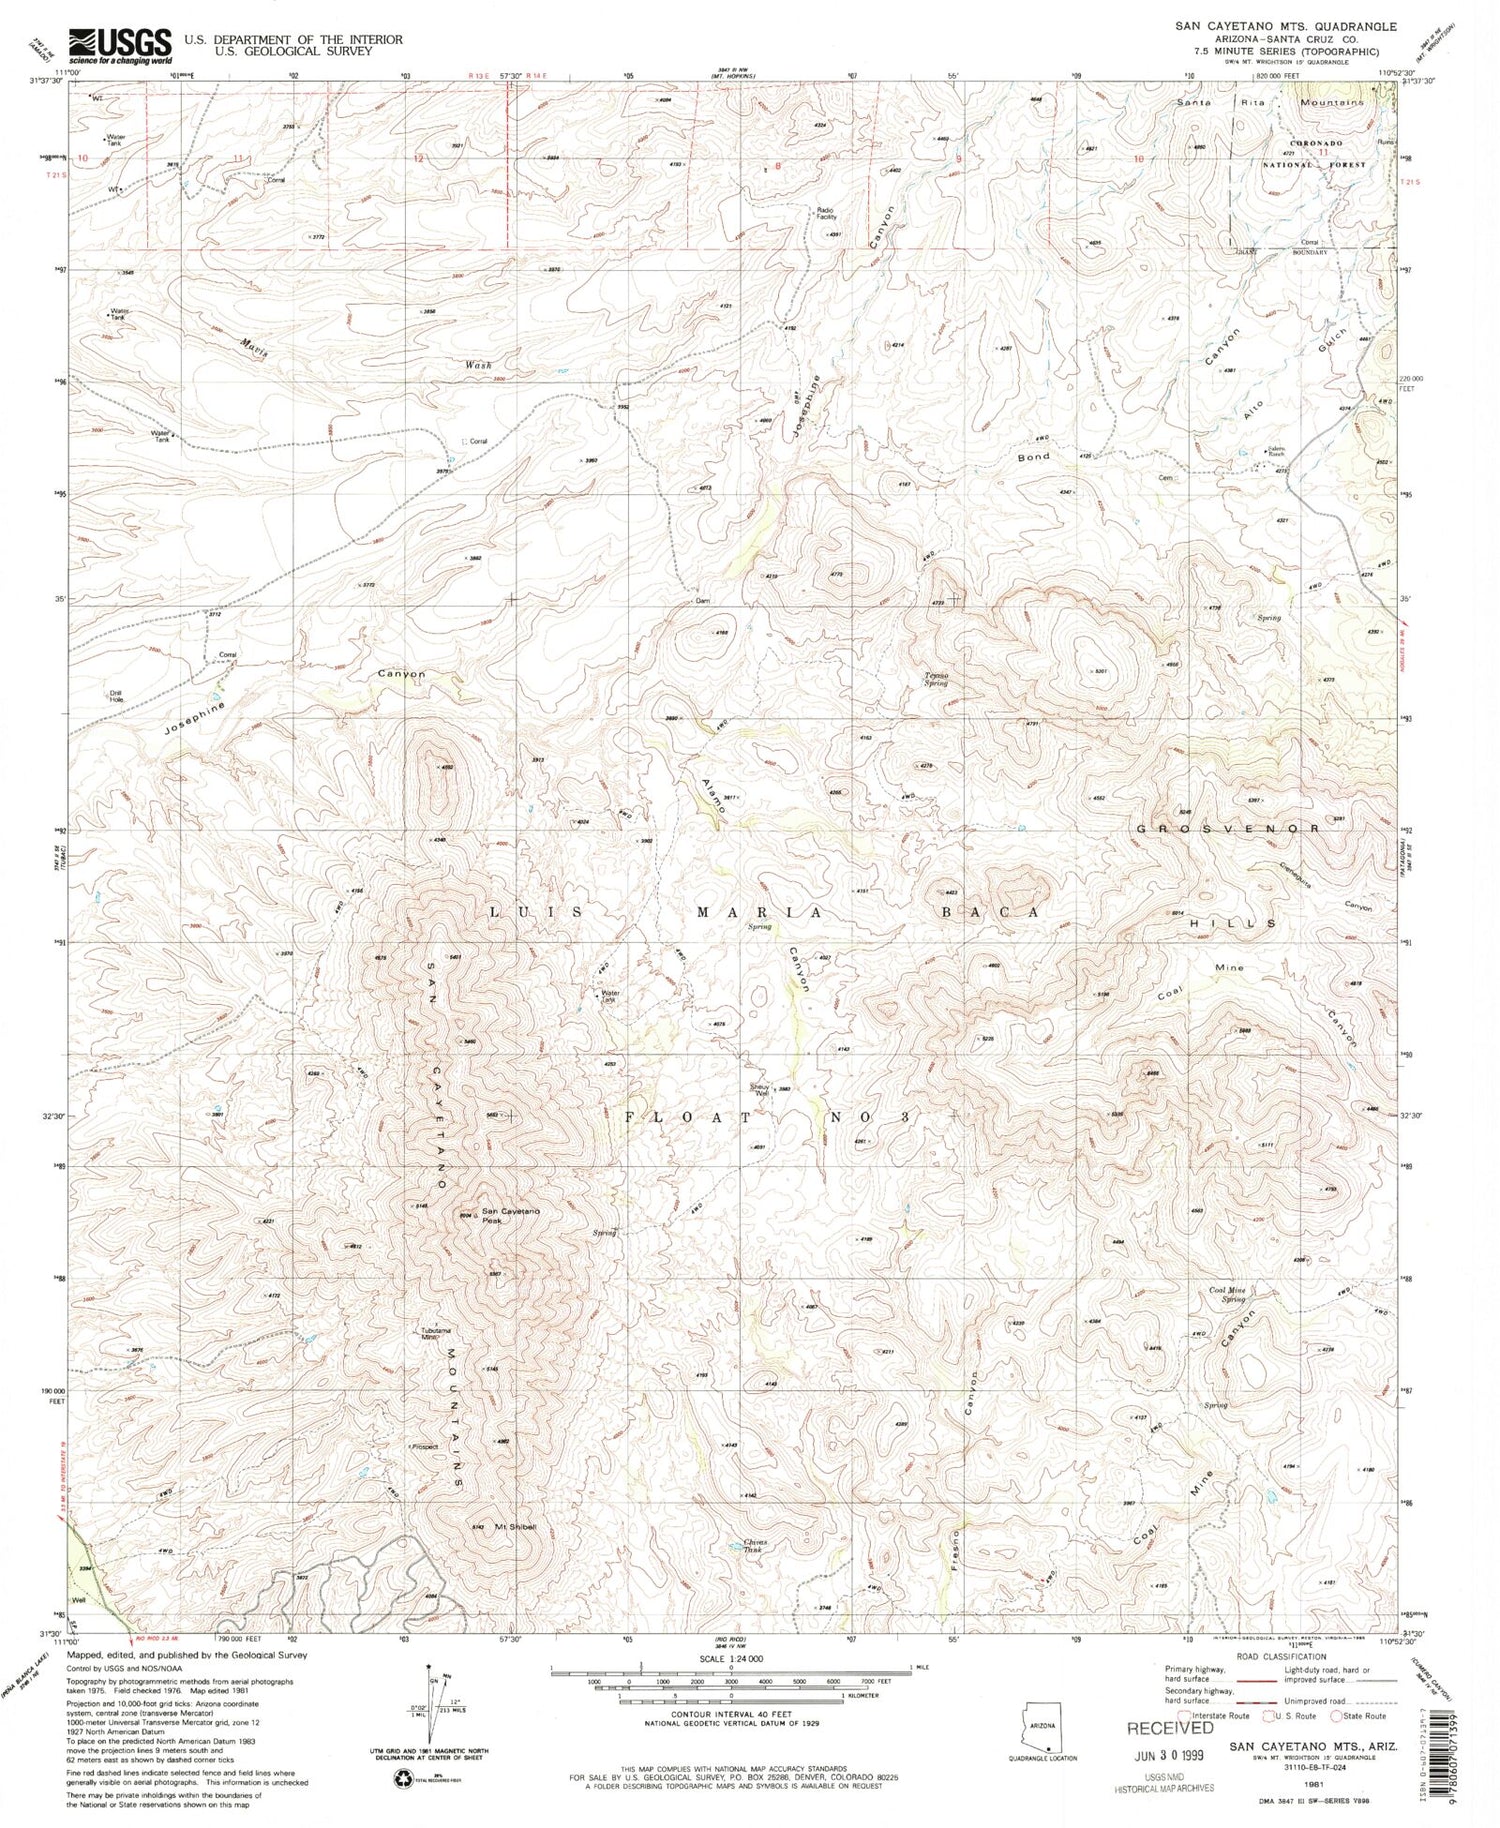 Classic USGS San Cayetano Mountains Arizona 7.5'x7.5' Topo Map Image